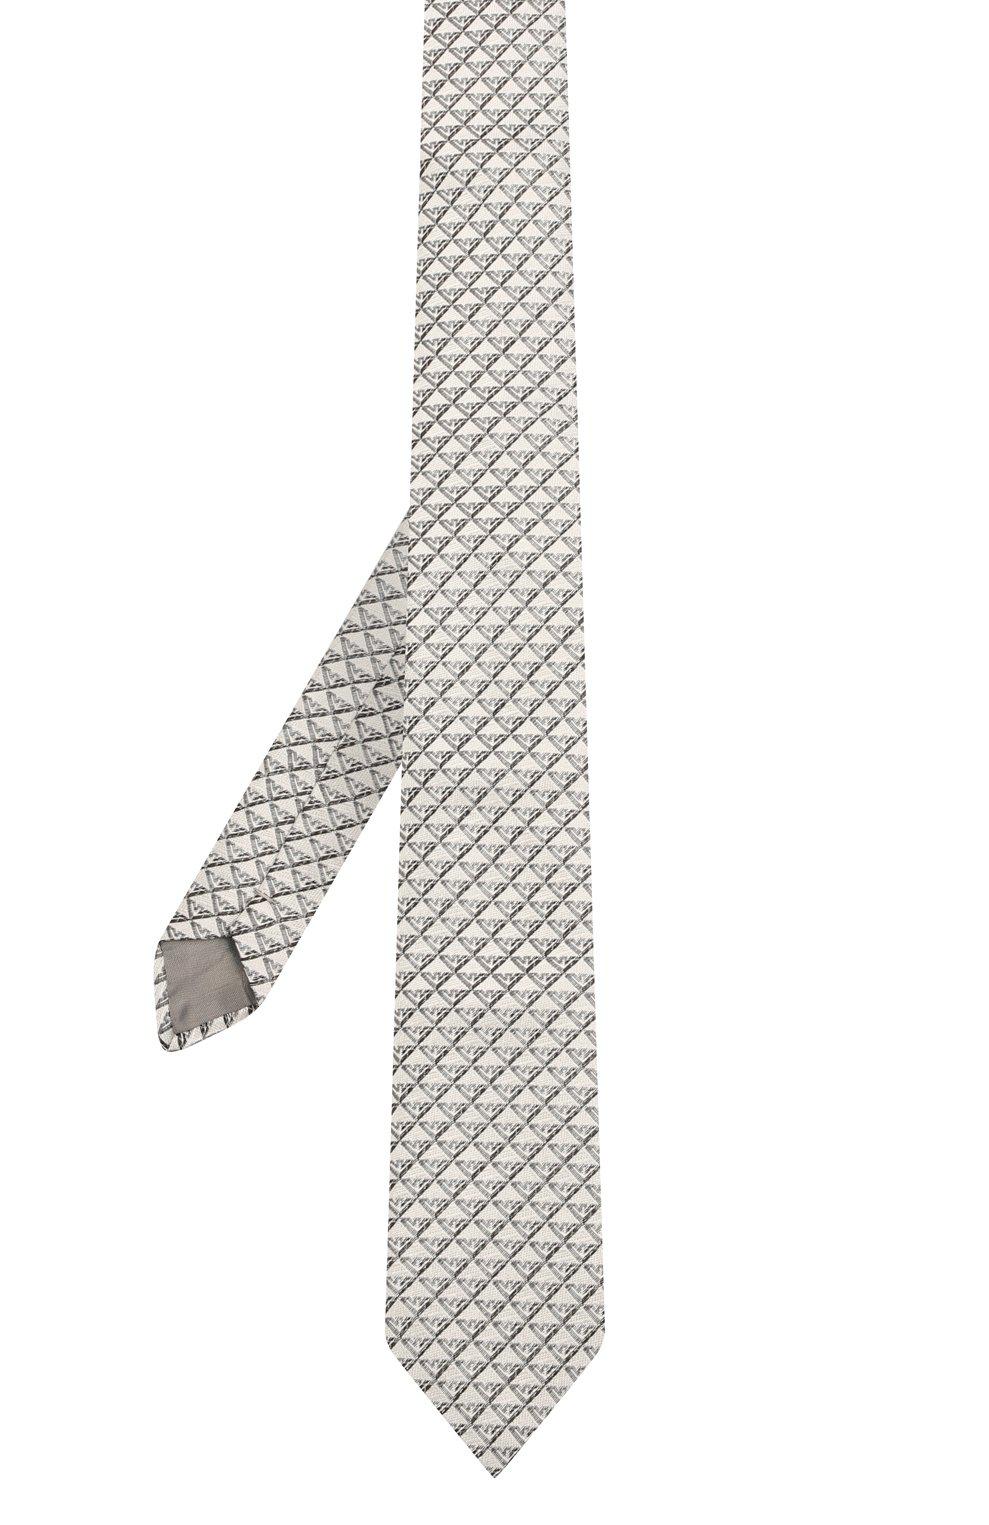 Шелковый галстук, Emporio Armani, 9680 руб.